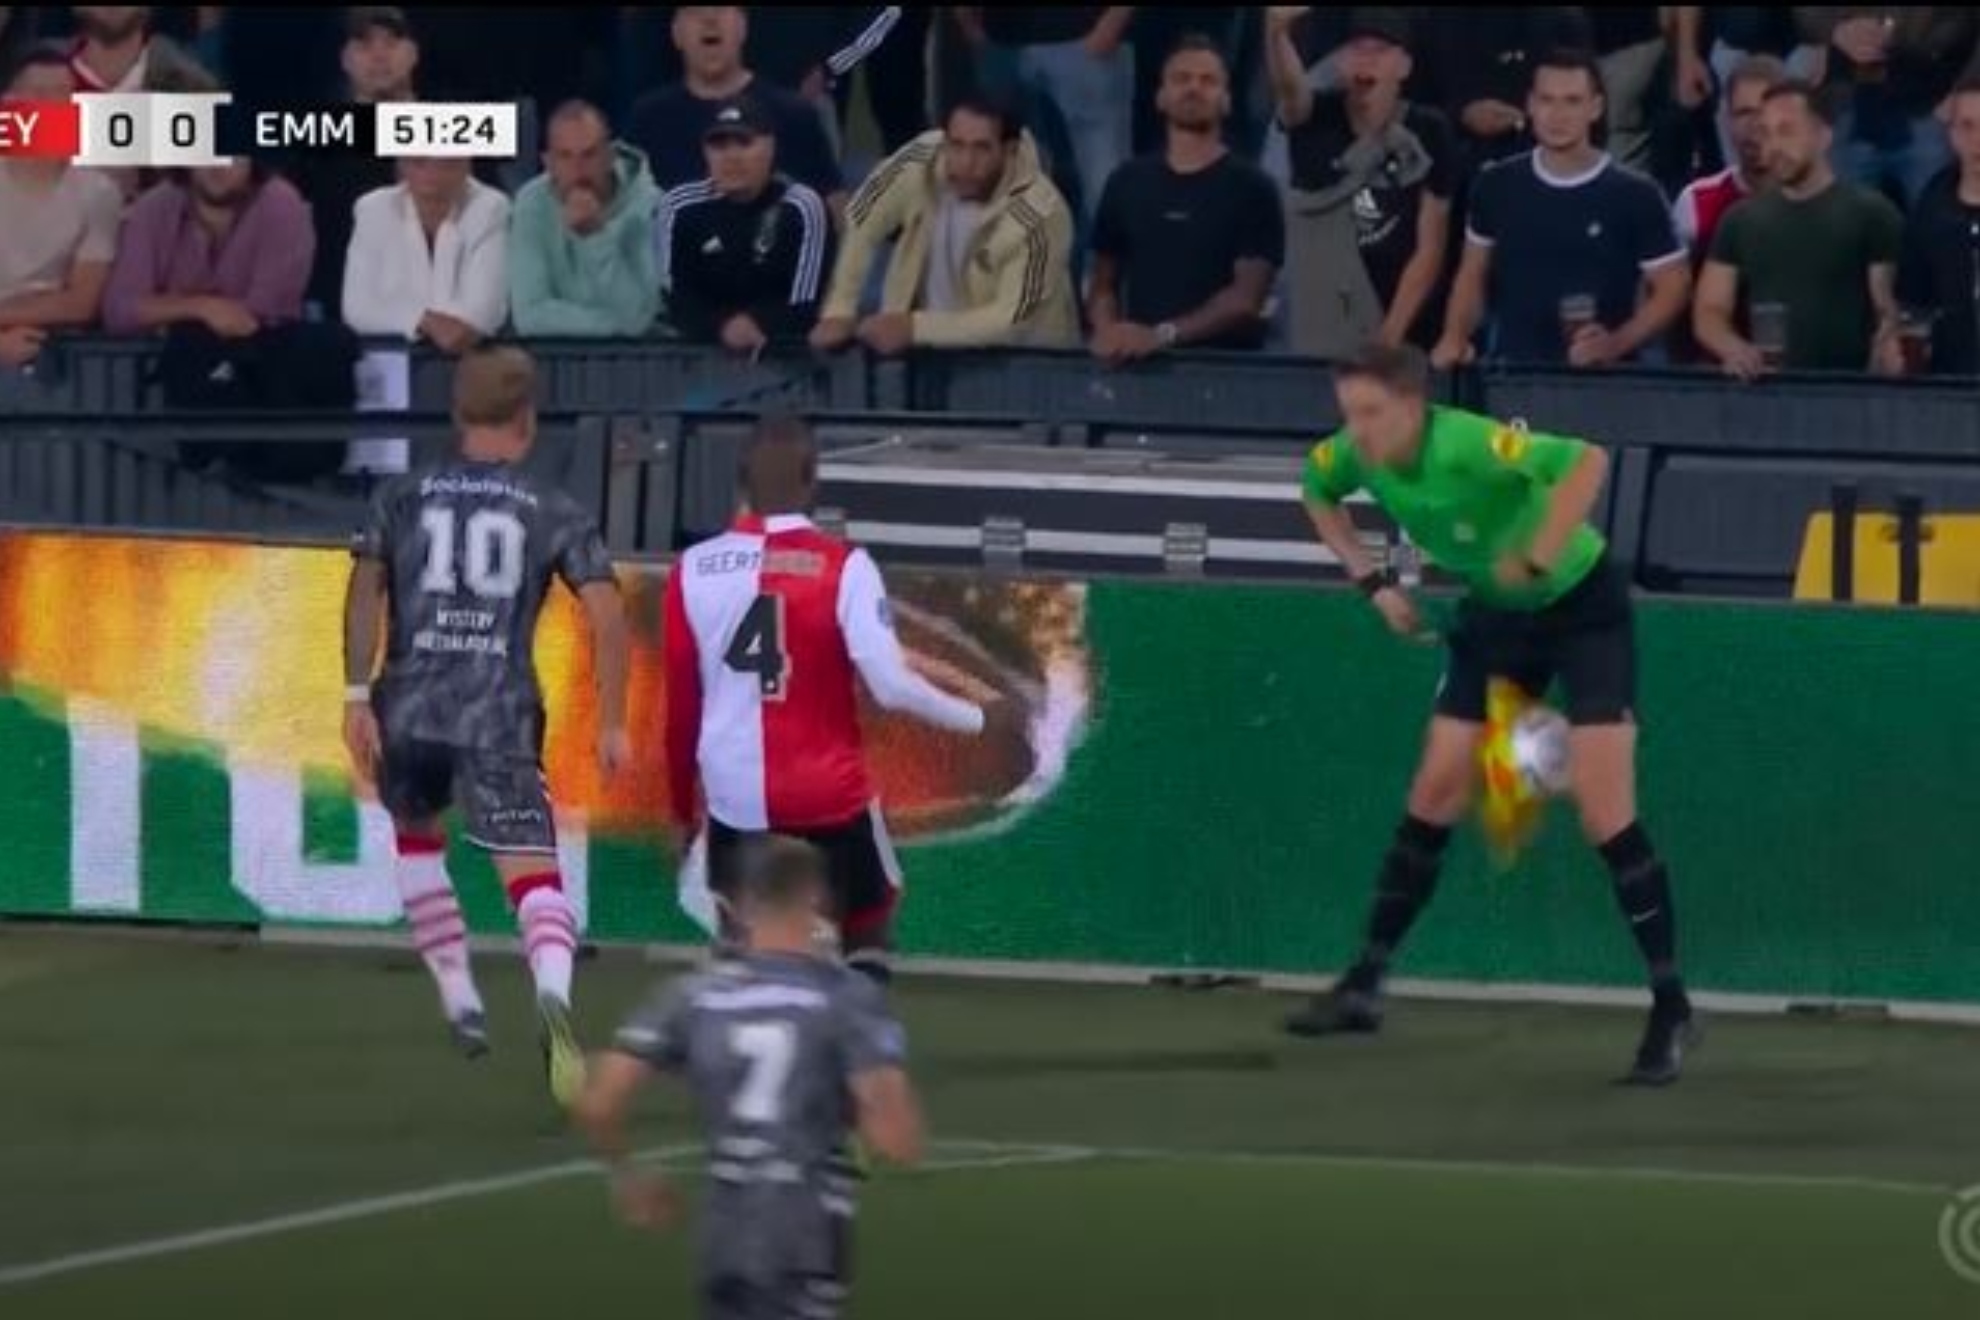 Un rbitro sufre un pelotazo en los genitales en el partido del Feyenoord